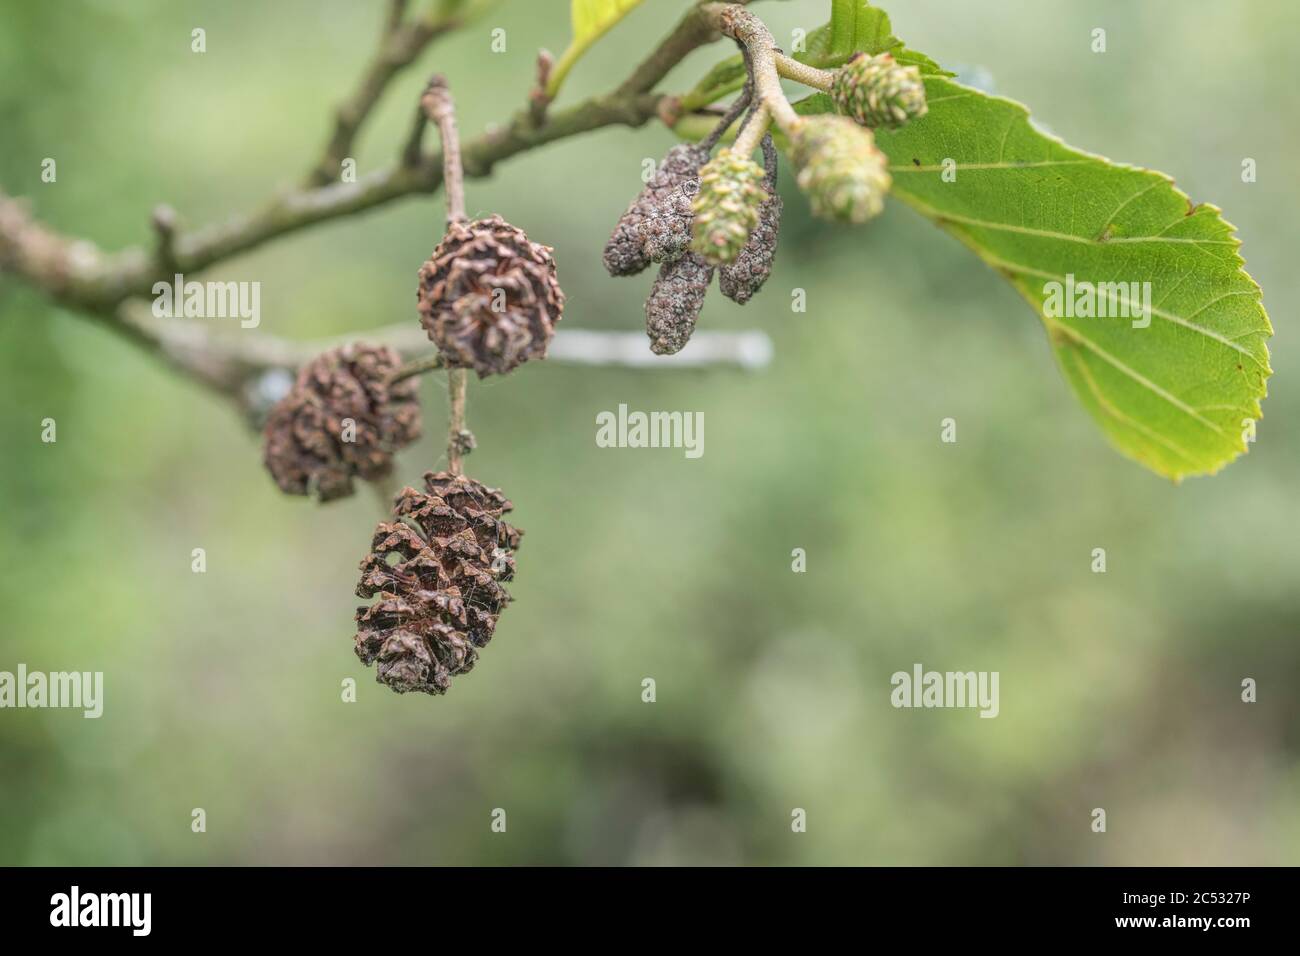 Reife weibliche Katzenzapfen Früchte einer Gemeine Erle / Alnus glutinosa. Erle einmal als Heilpflanze in pflanzlichen Heilmitteln verwendet. Stockfoto